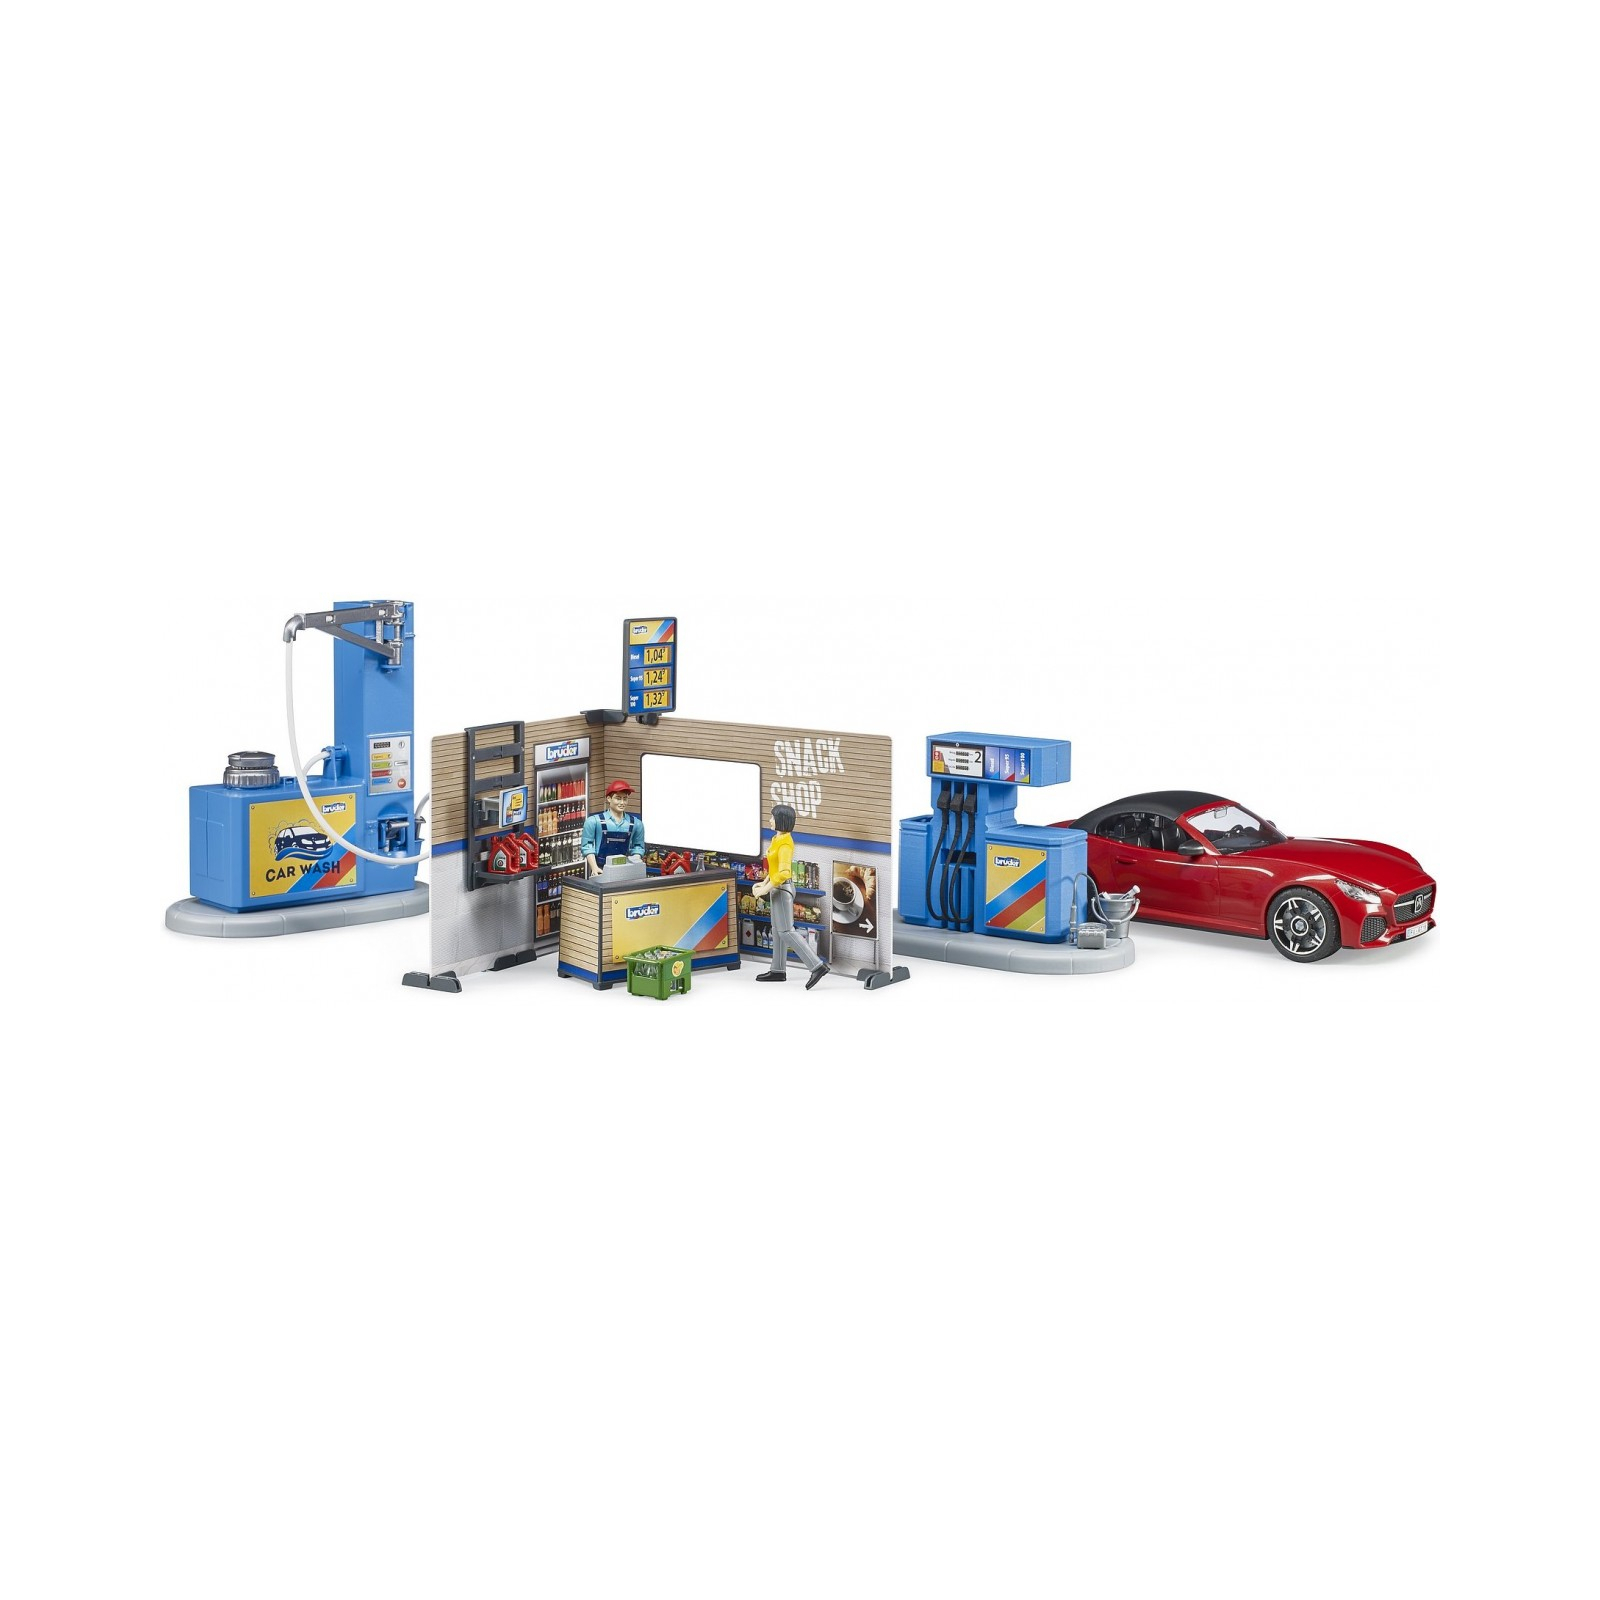 Игровой набор Bruder АЗС с автомойкой, автомобилем и фигурками (62111)